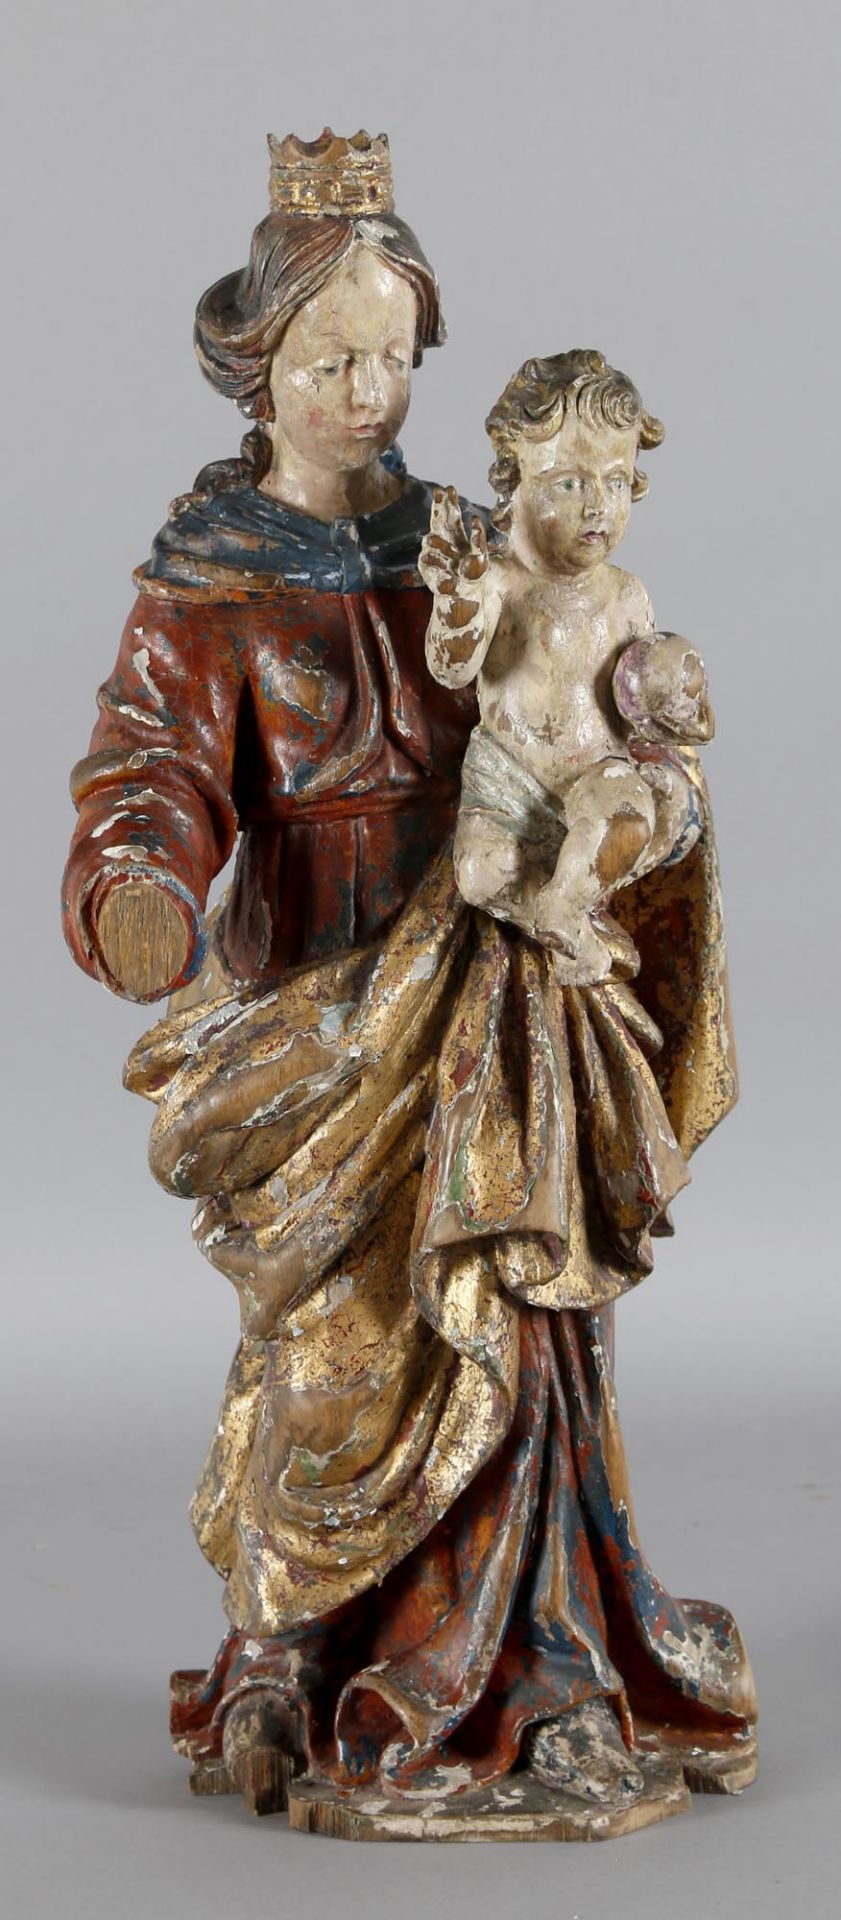 Muttergottes, Maasraum, Mitte 18. Jh.Skulptur, wohl Eichenholz, vollrund gearbeitet, nicht - Bild 2 aus 3